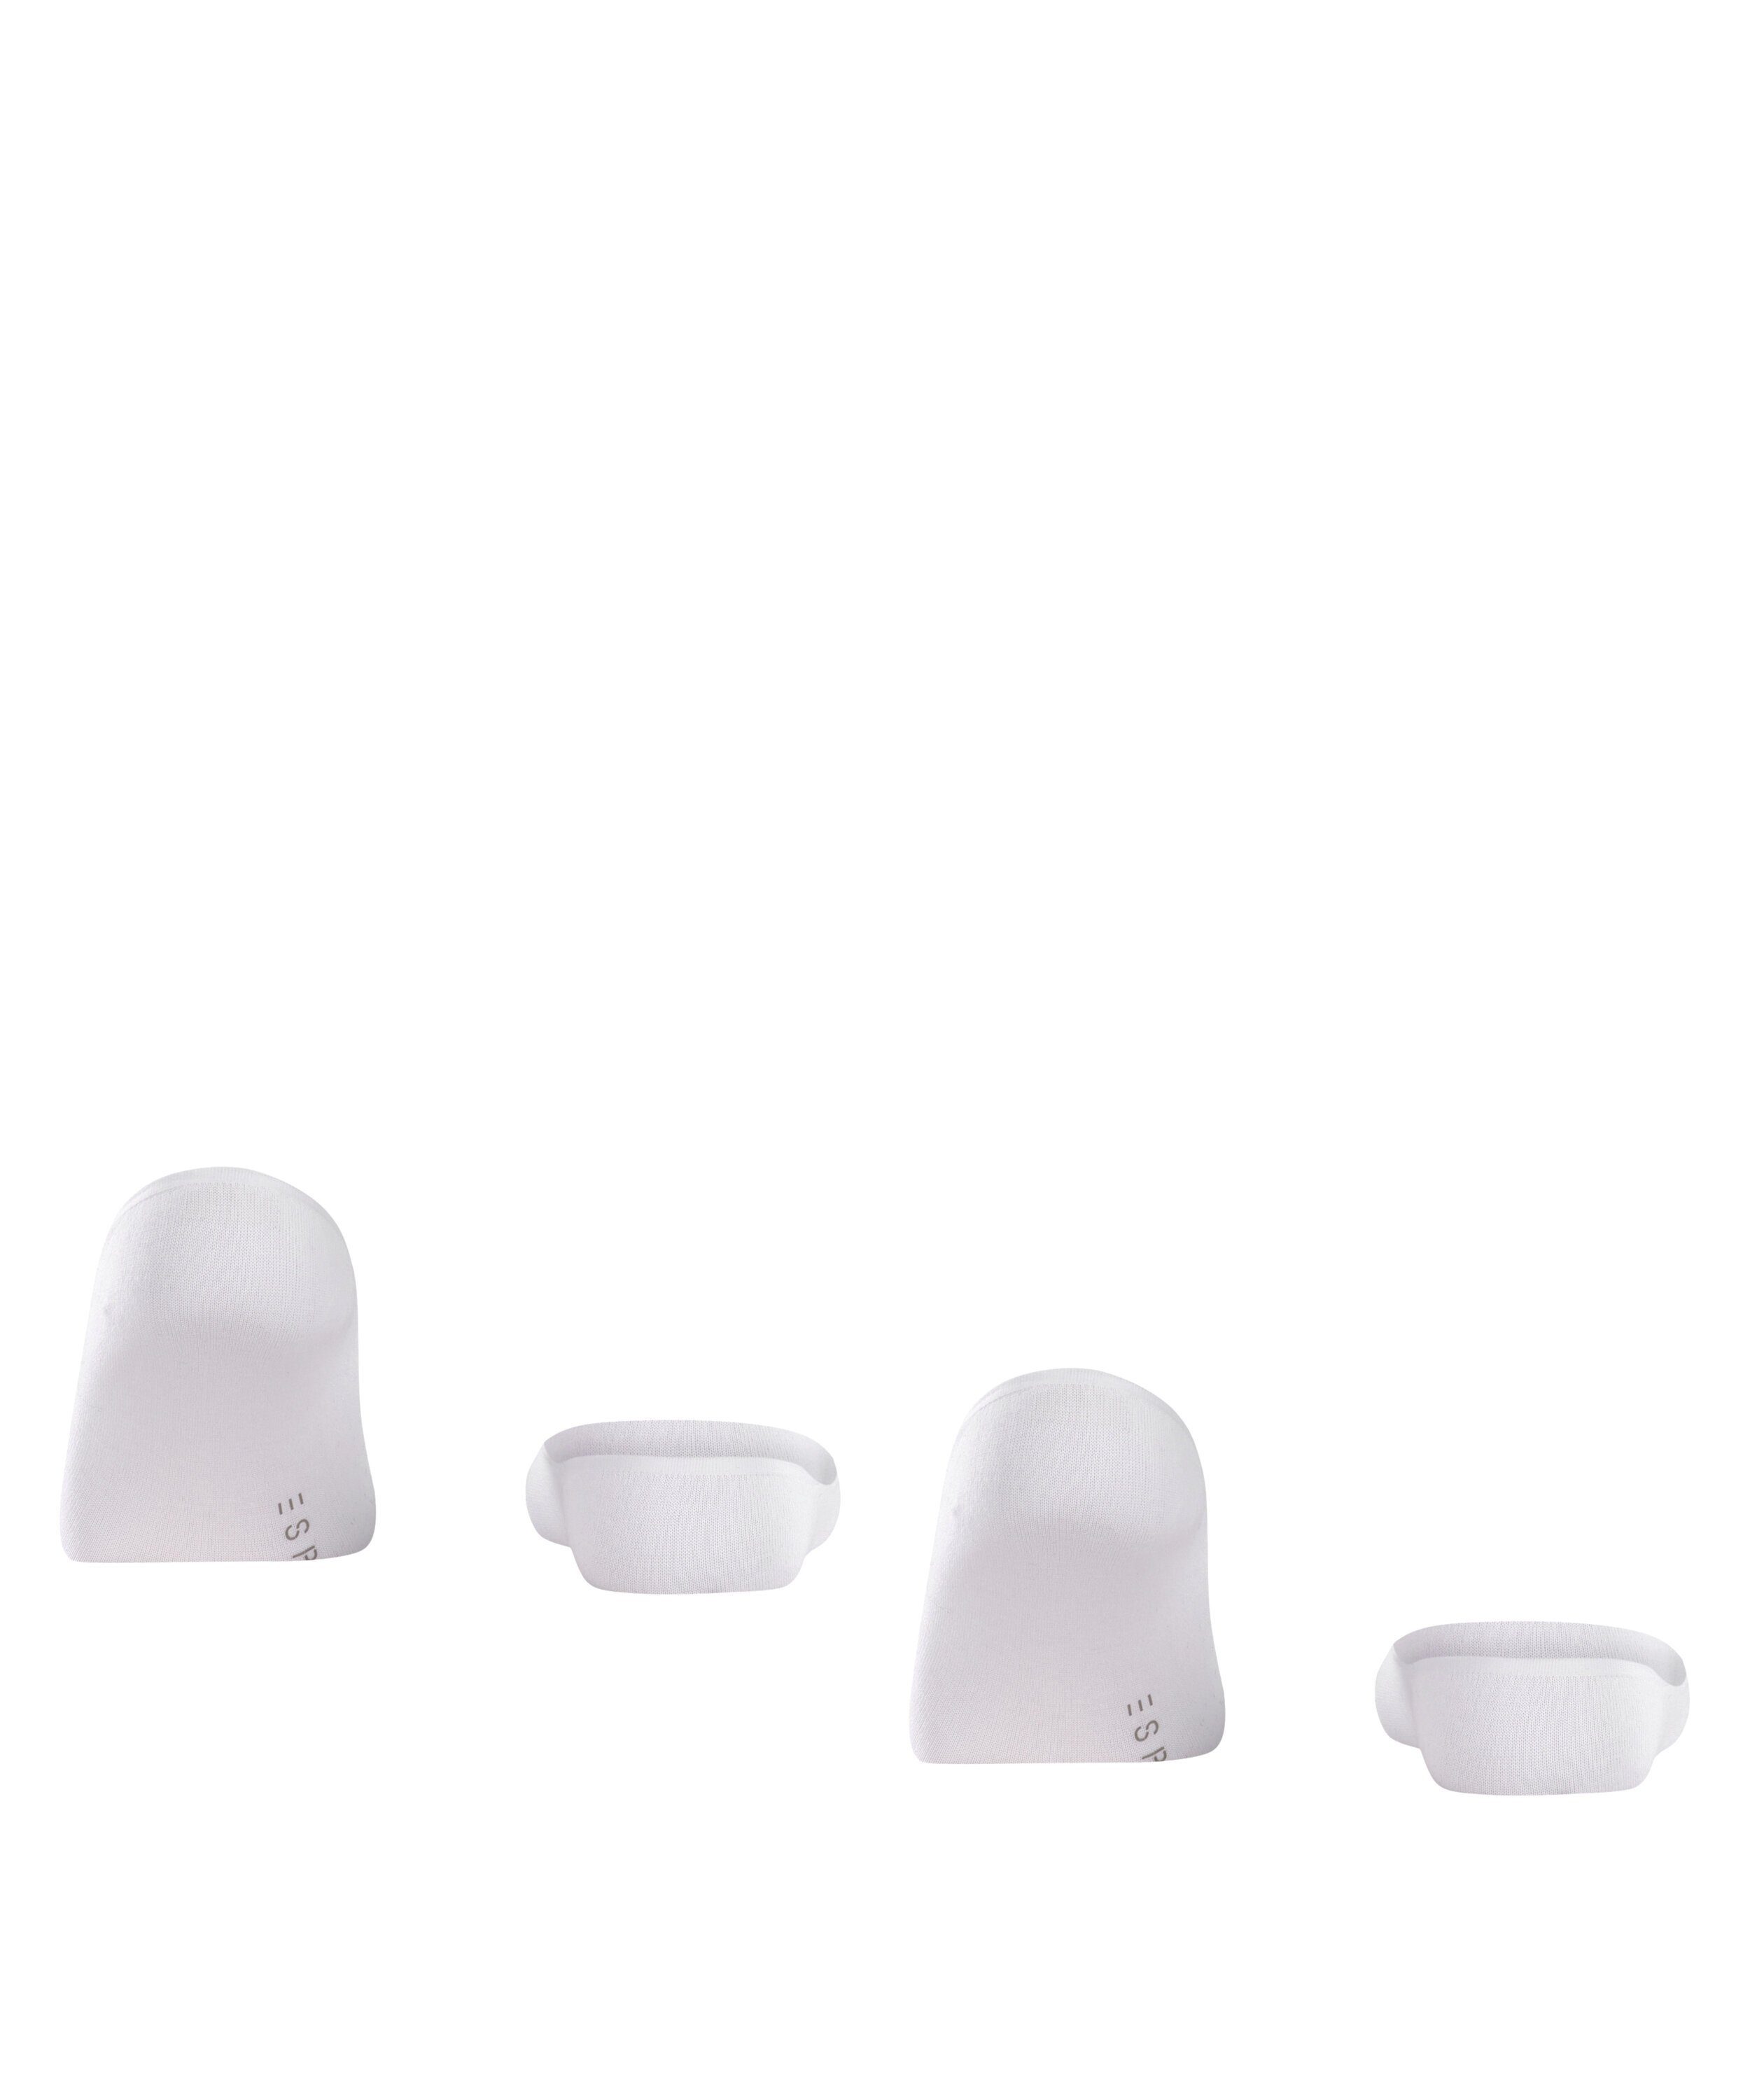 Laufgefühl Esprit white Füßlinge Basic für ein sicheres 2-Pack (2000)